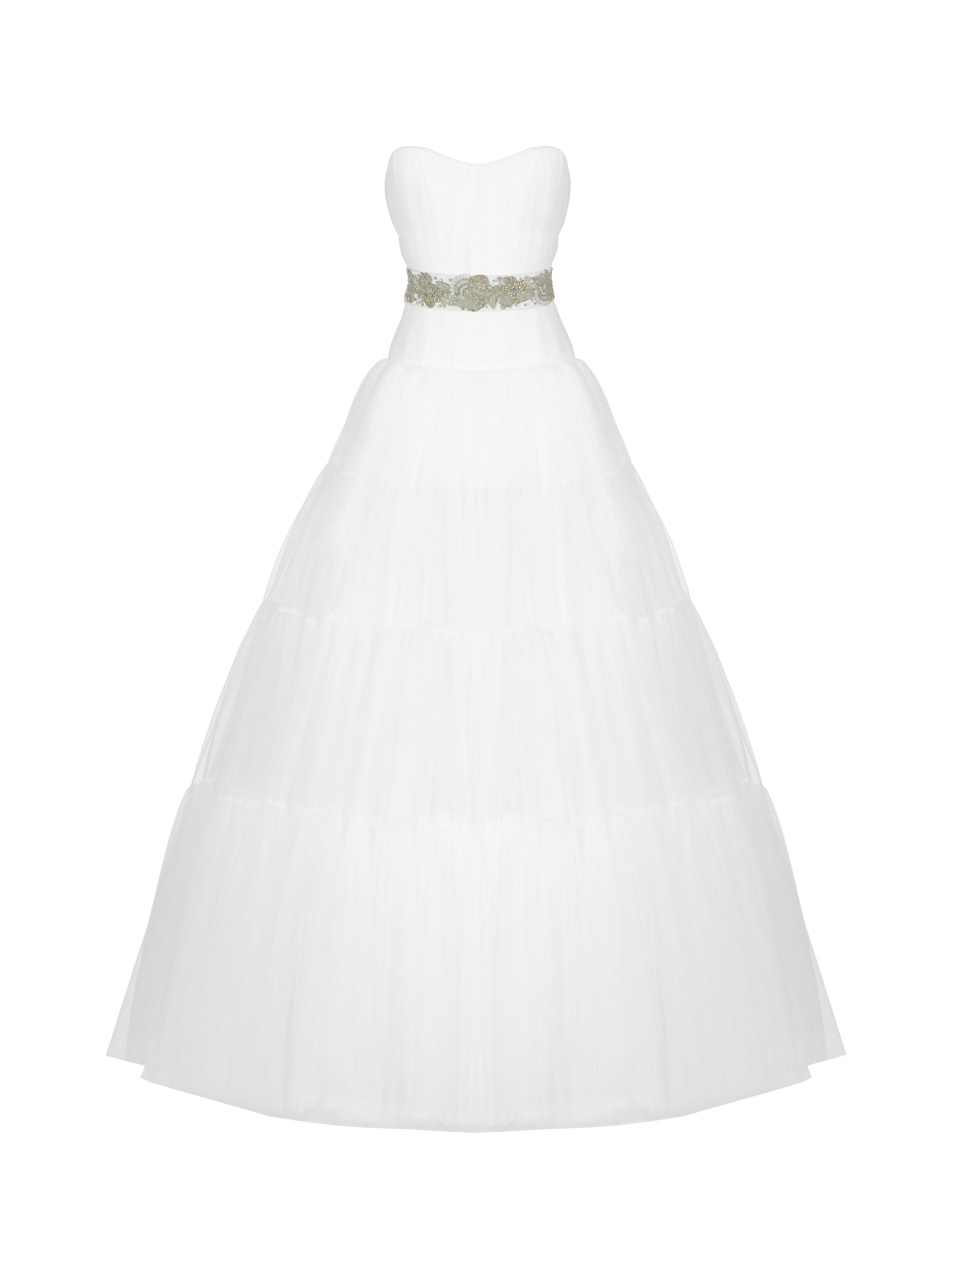 Белое корсетное платье из фатина, 1